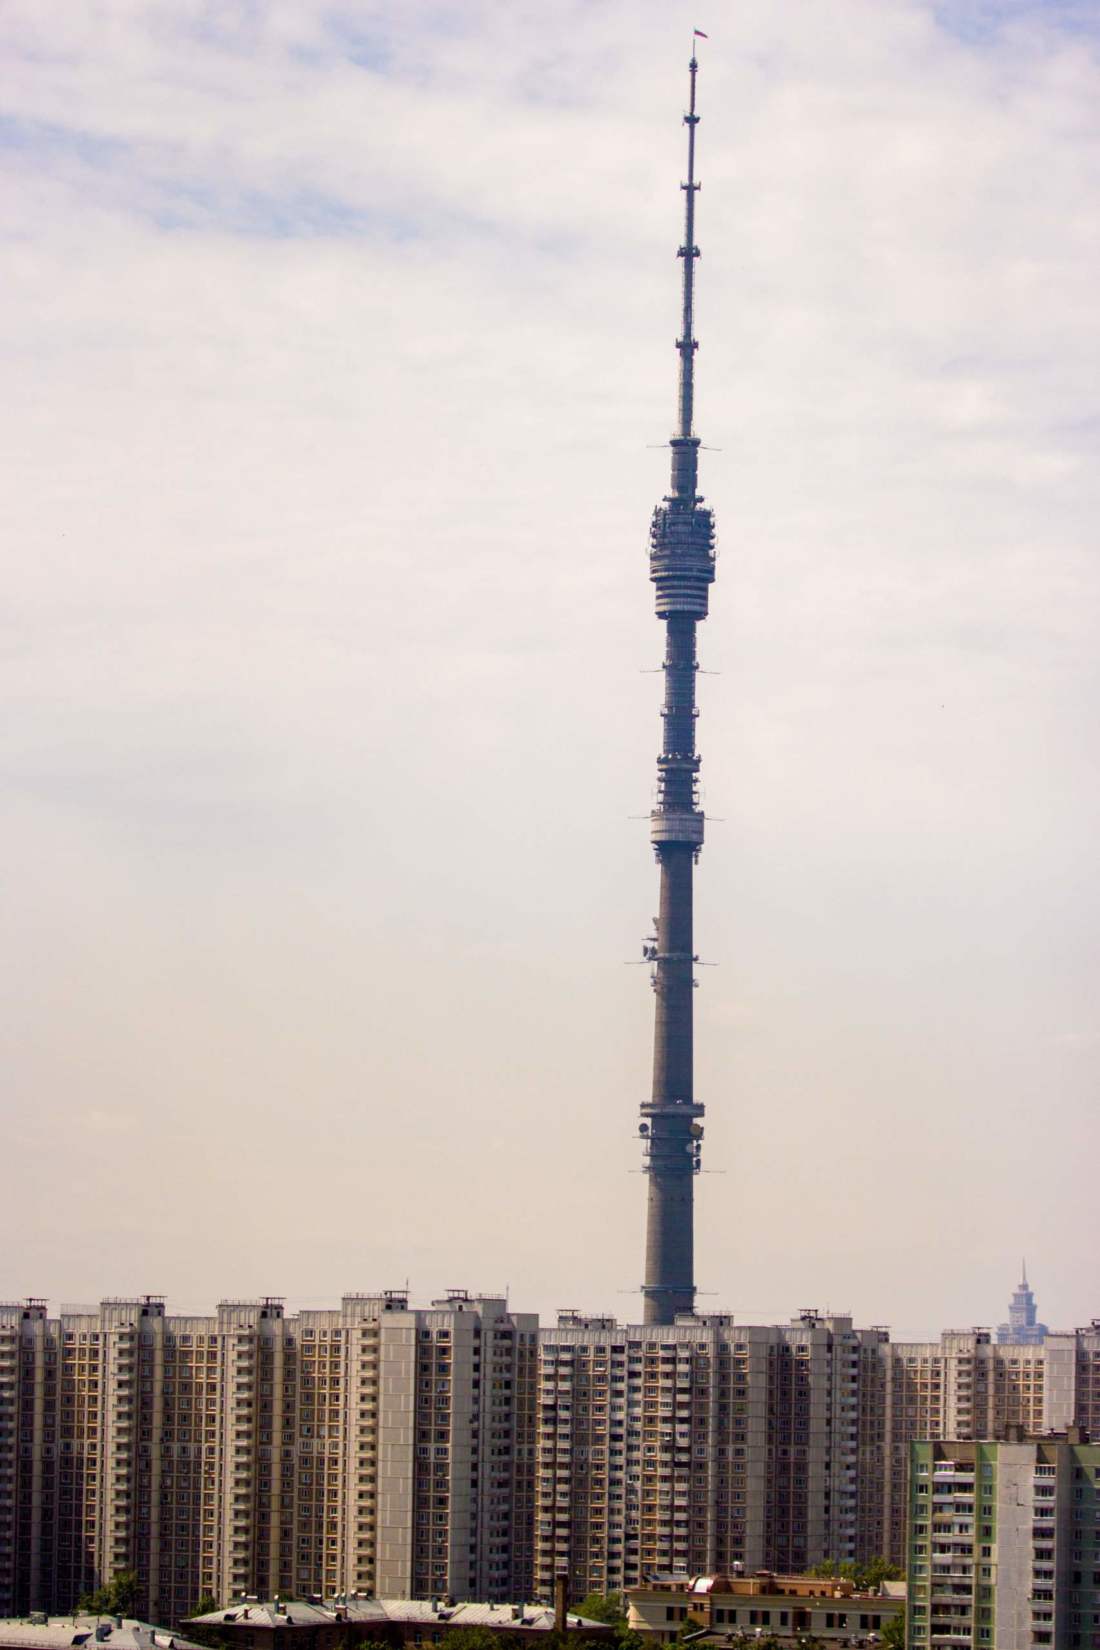 Ostankino Tower